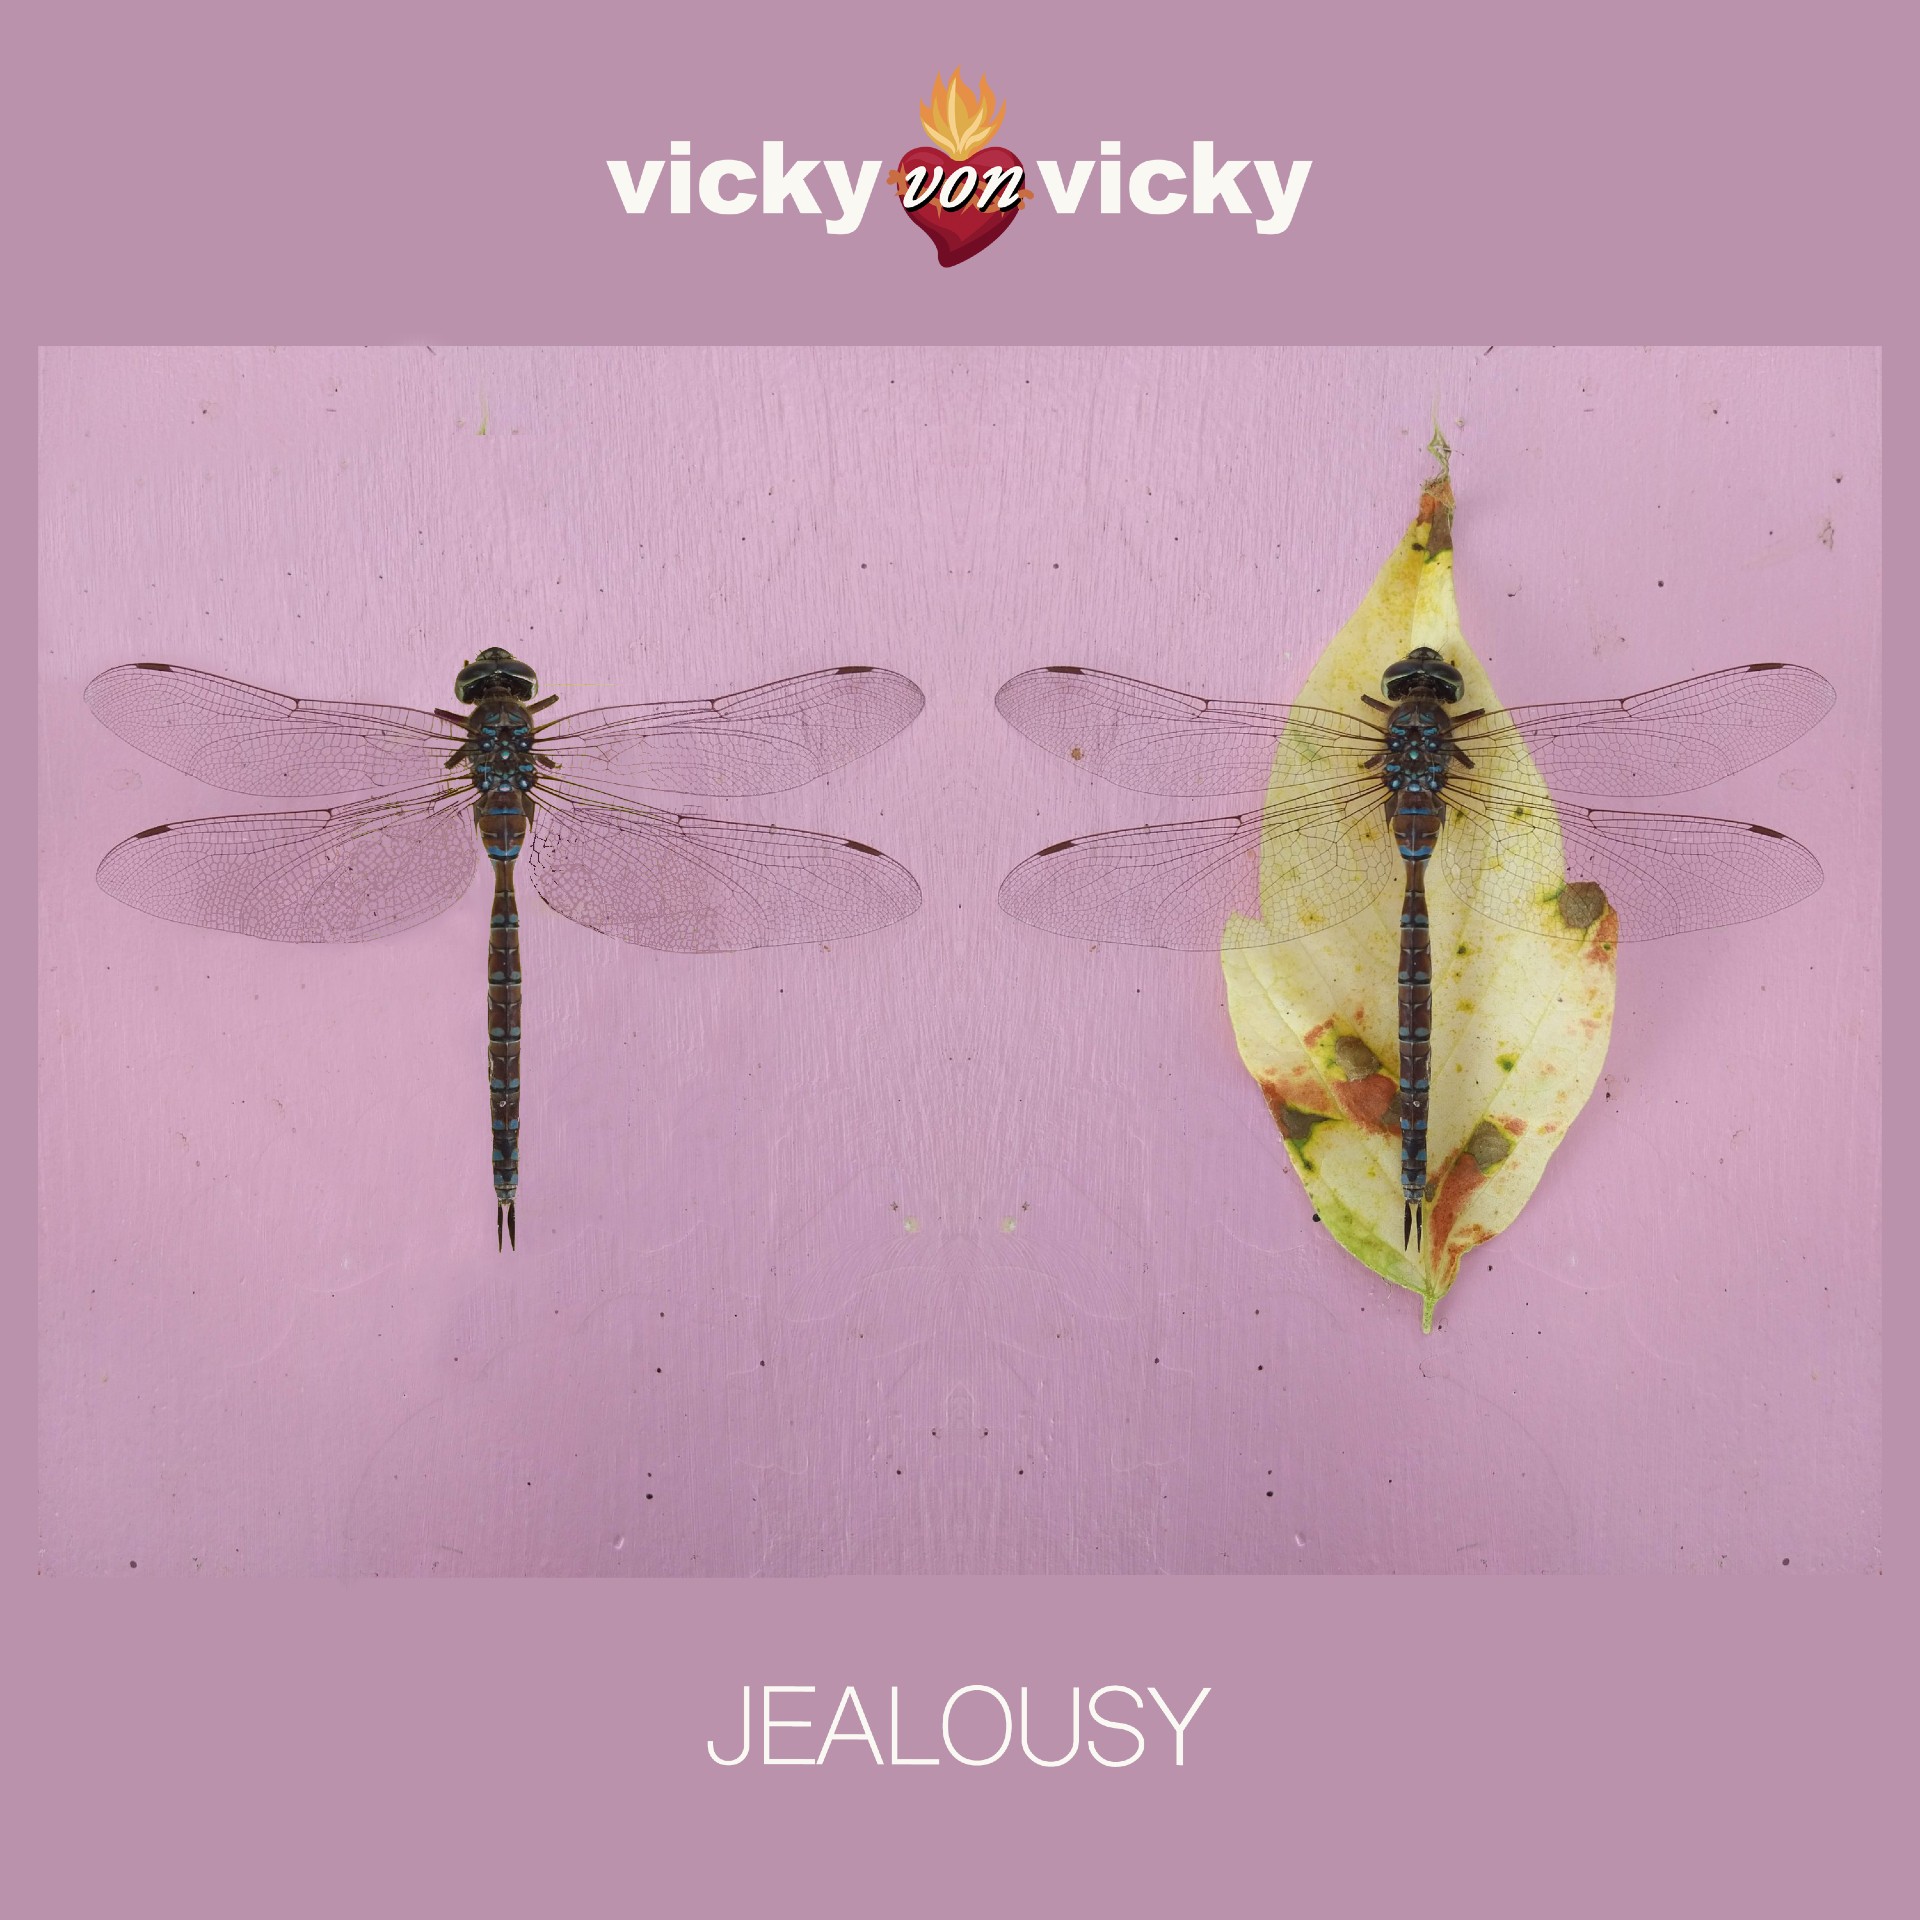 Vicky Von Vicky “Jealousy” single artwork